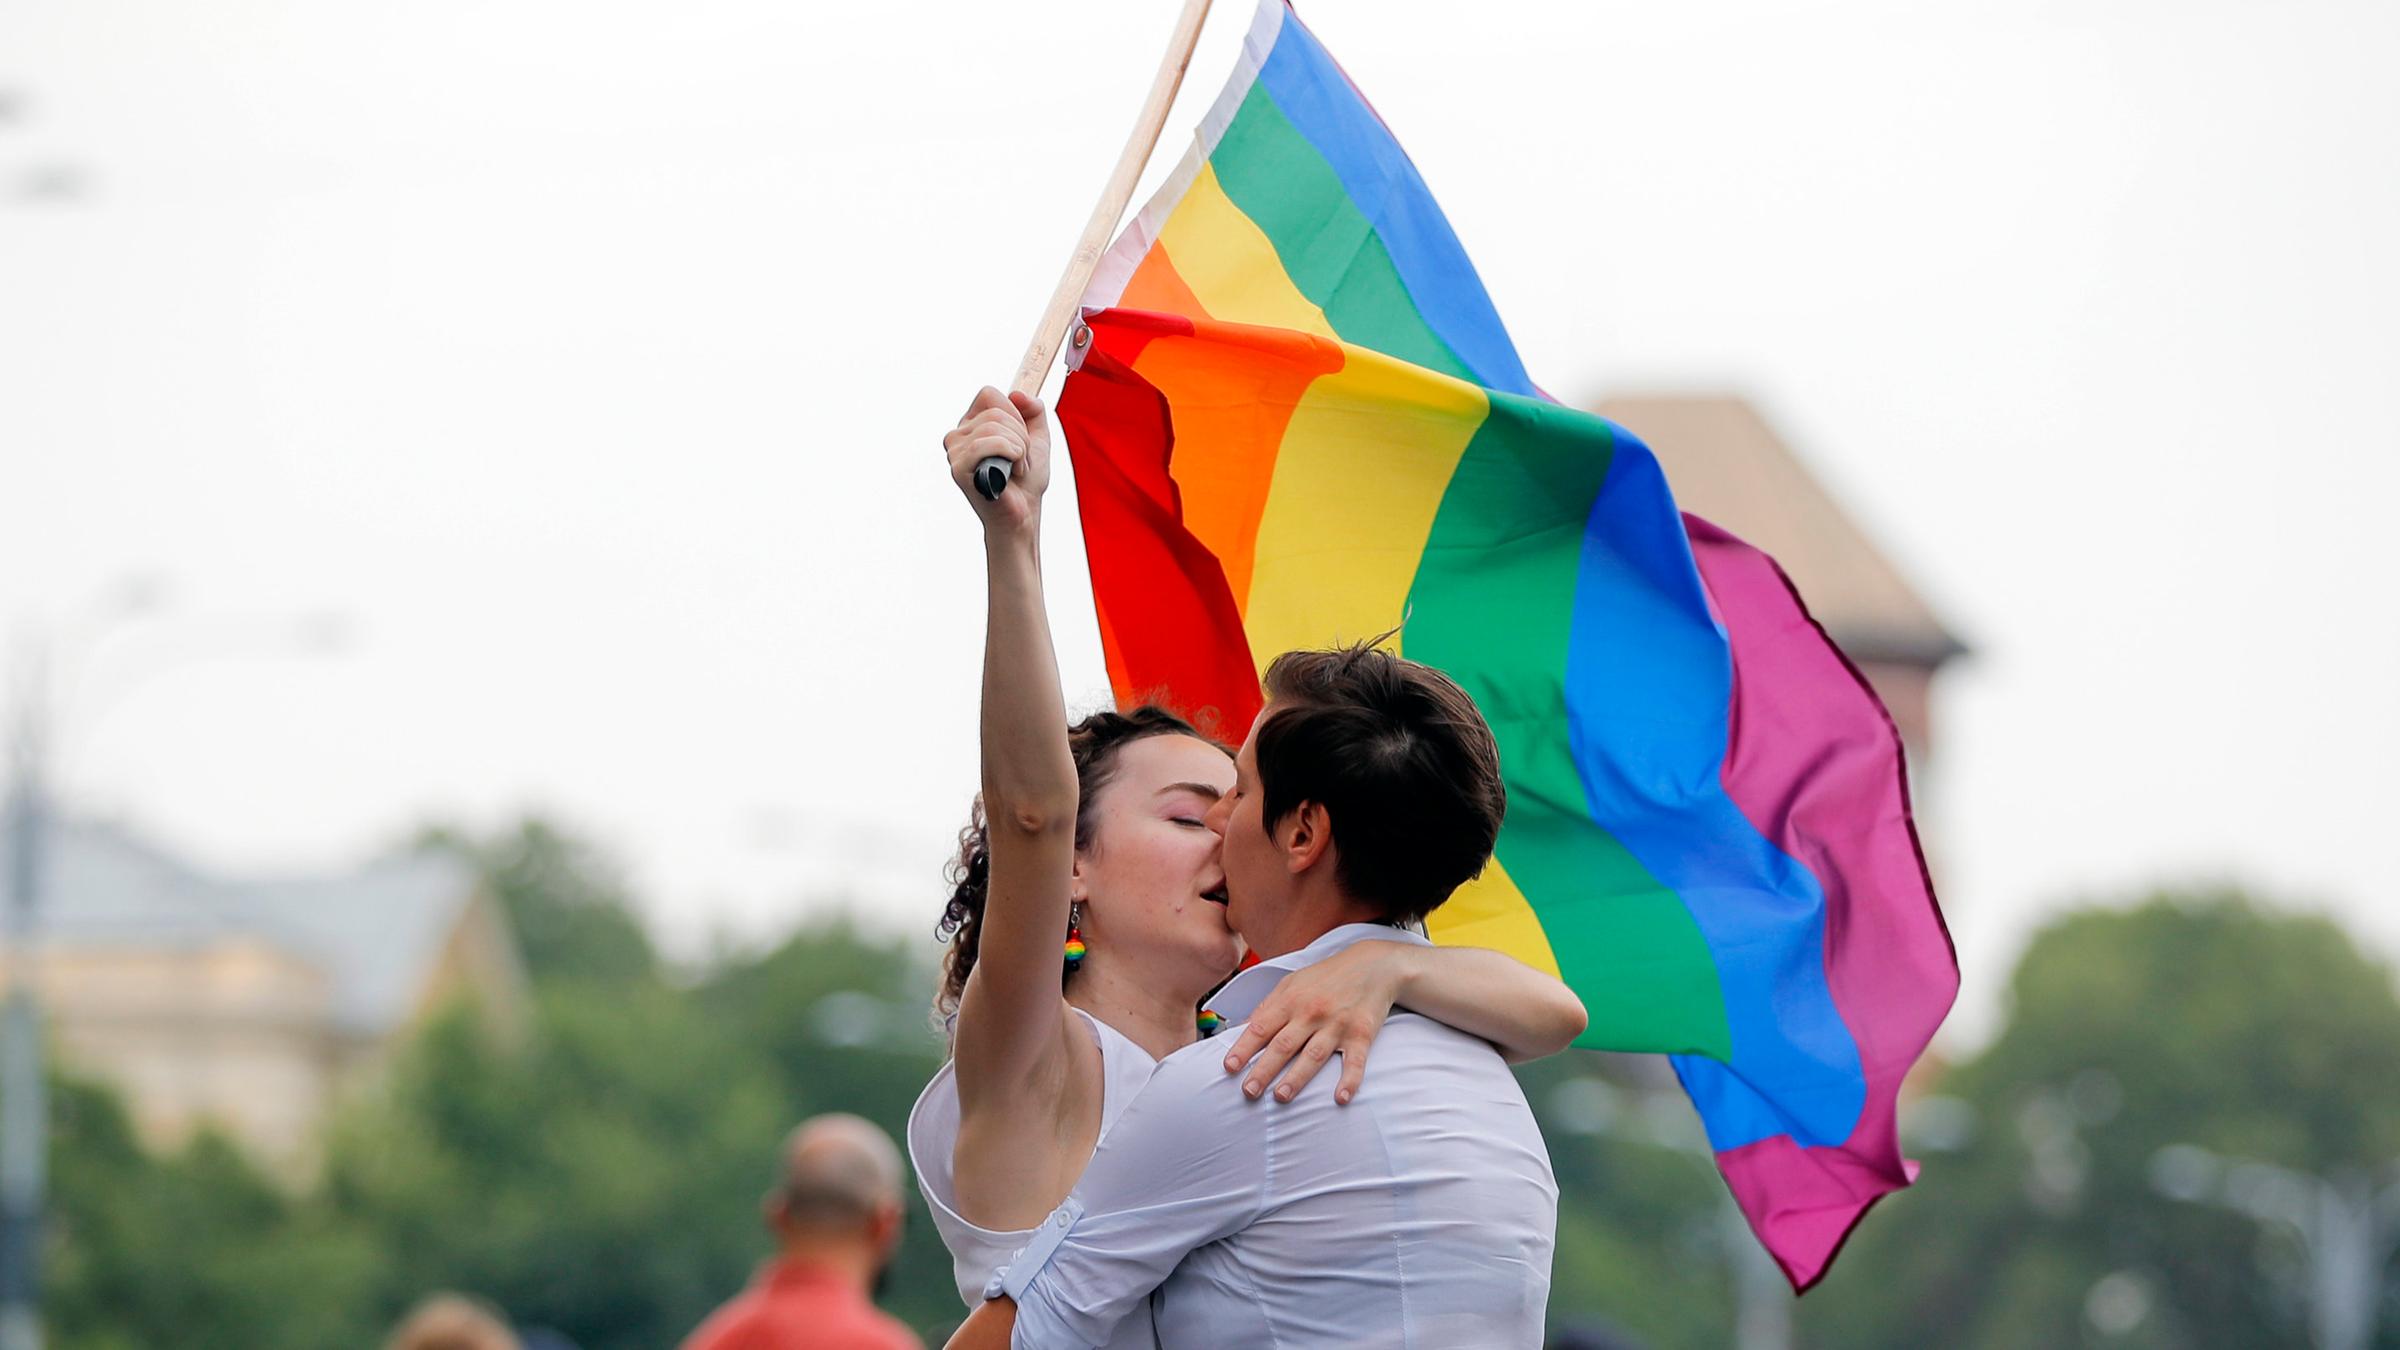  Zwei Frauen küssen sich, eine von ihnen hält eine Regenbogenflagge in der Hand.